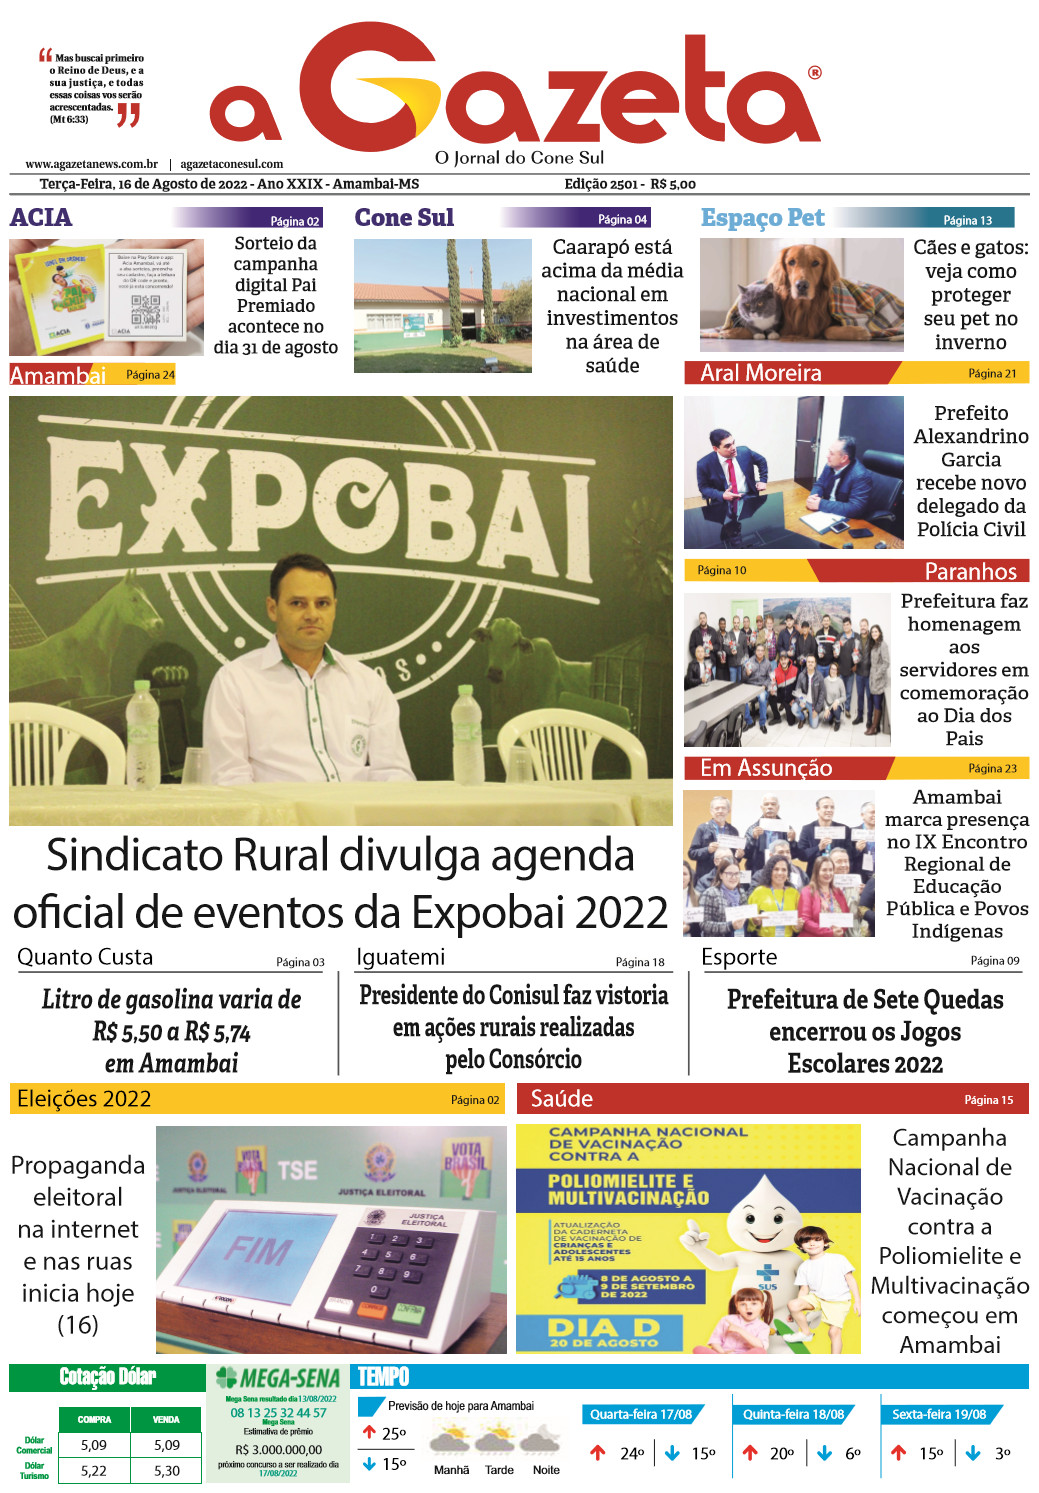 Confira a edição digital do jornal impresso A Gazeta desta terça-feira, dia 16